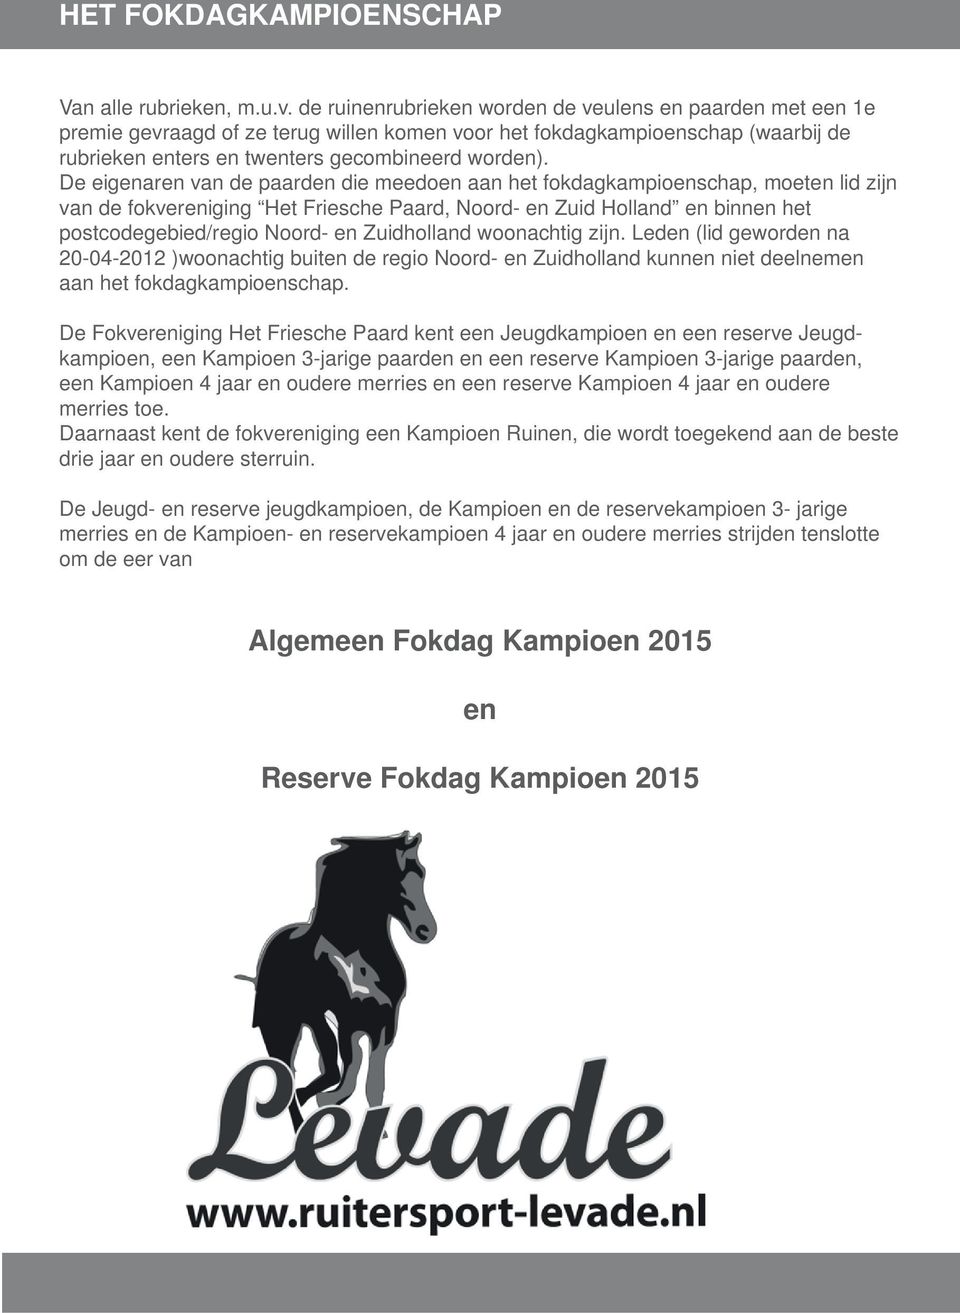 De eigenaren van de paarden die meedoen aan het fokdagkampioenschap, moeten lid zijn van de fokvereniging Het Friesche Paard, Noord- en Zuid Holland en binnen het postcodegebied/regio Noord- en